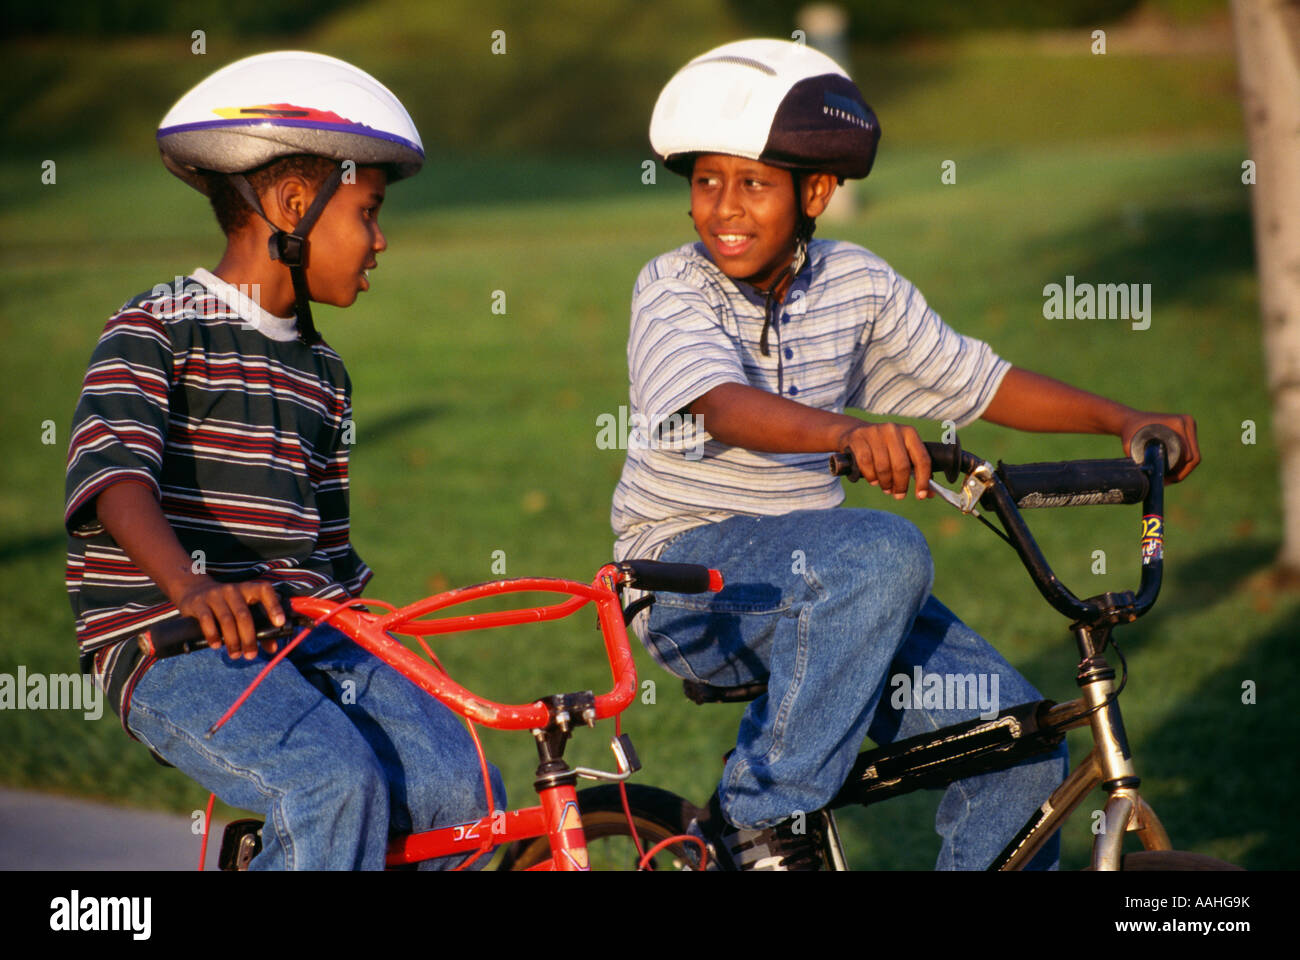 Los niños niño montando bicicleta bicicleta bicicleta bicicleta muchachos étnicos de 7-9 años de edad con casco cascos antiguos de la actividad exterior de los Estados Unidos ©Myrleen Pearson Foto de stock